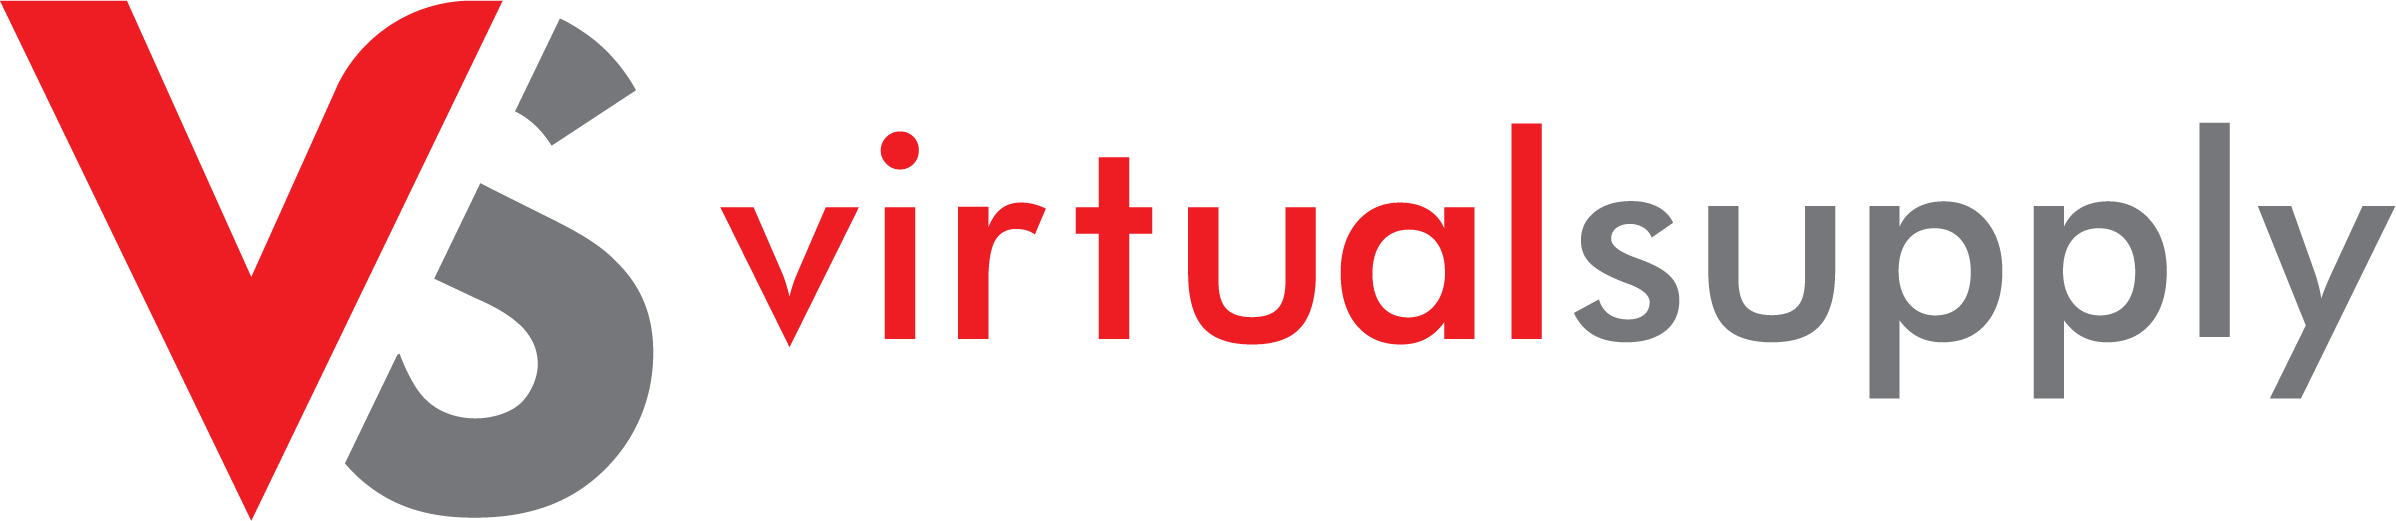 Virtual Supply Company Logo